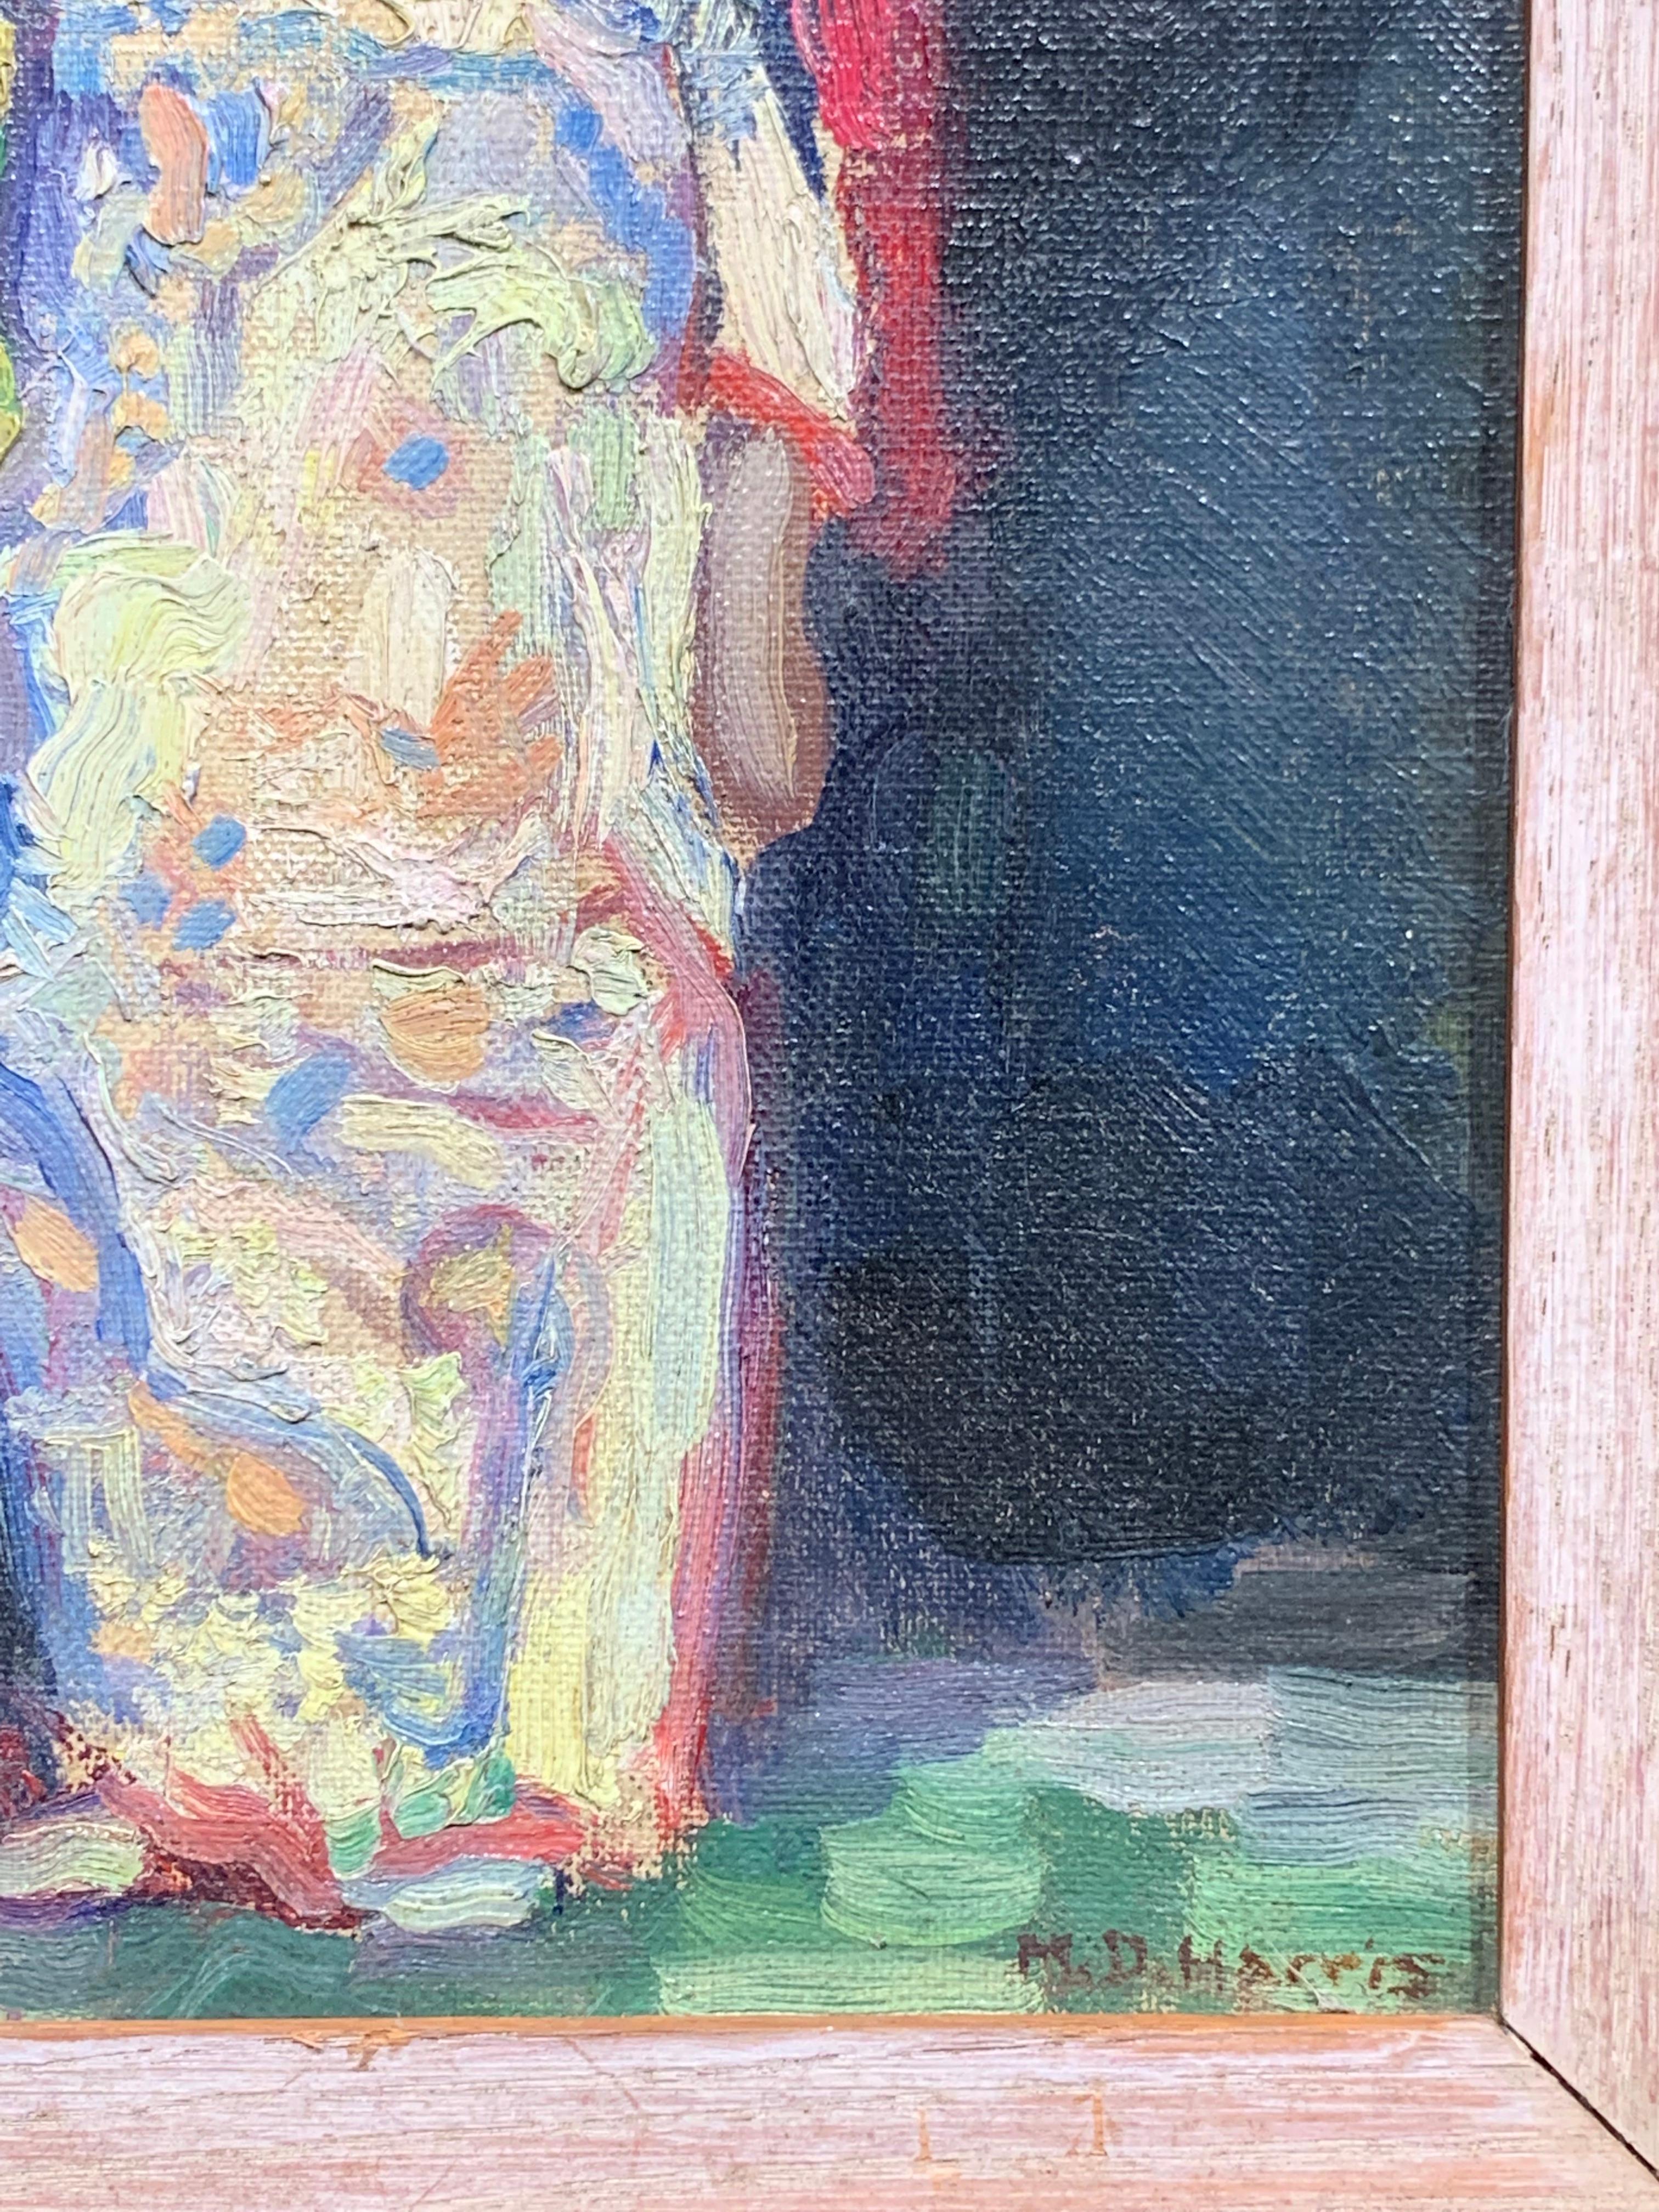 Amérindien de l'Est (figure impressionniste) - Impressionnisme Painting par Marian D. Harris